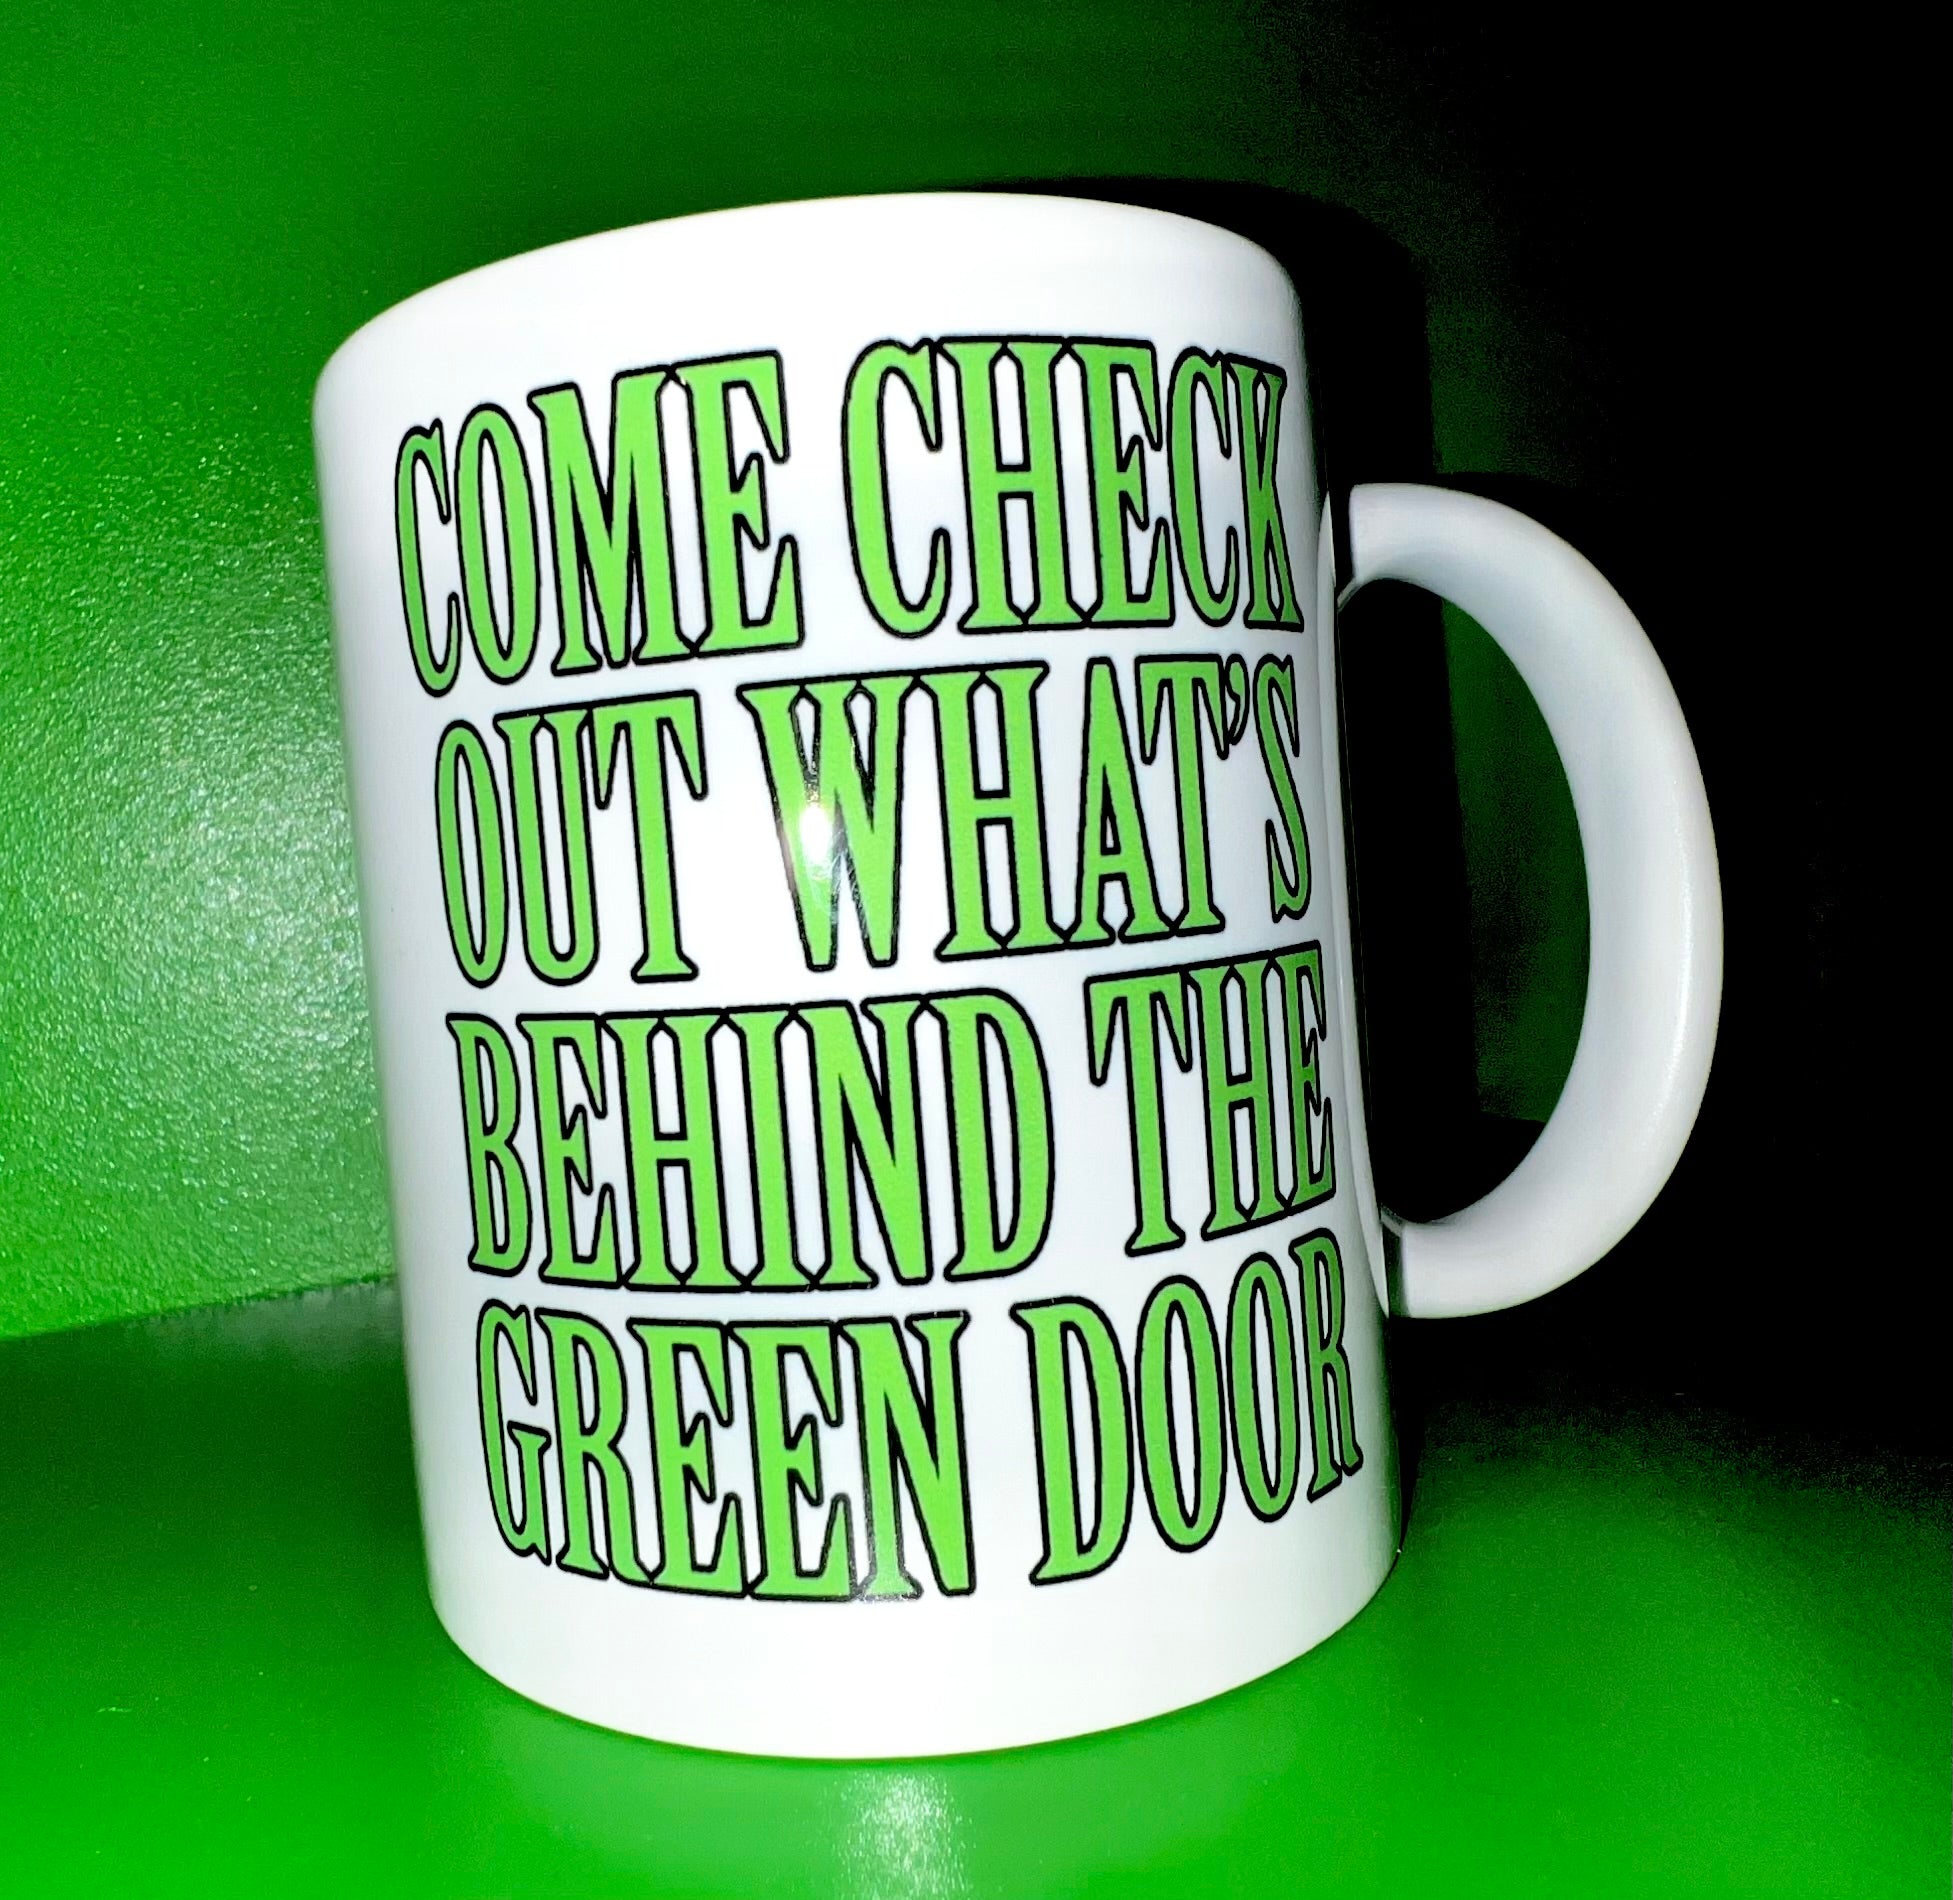 Green Door cup